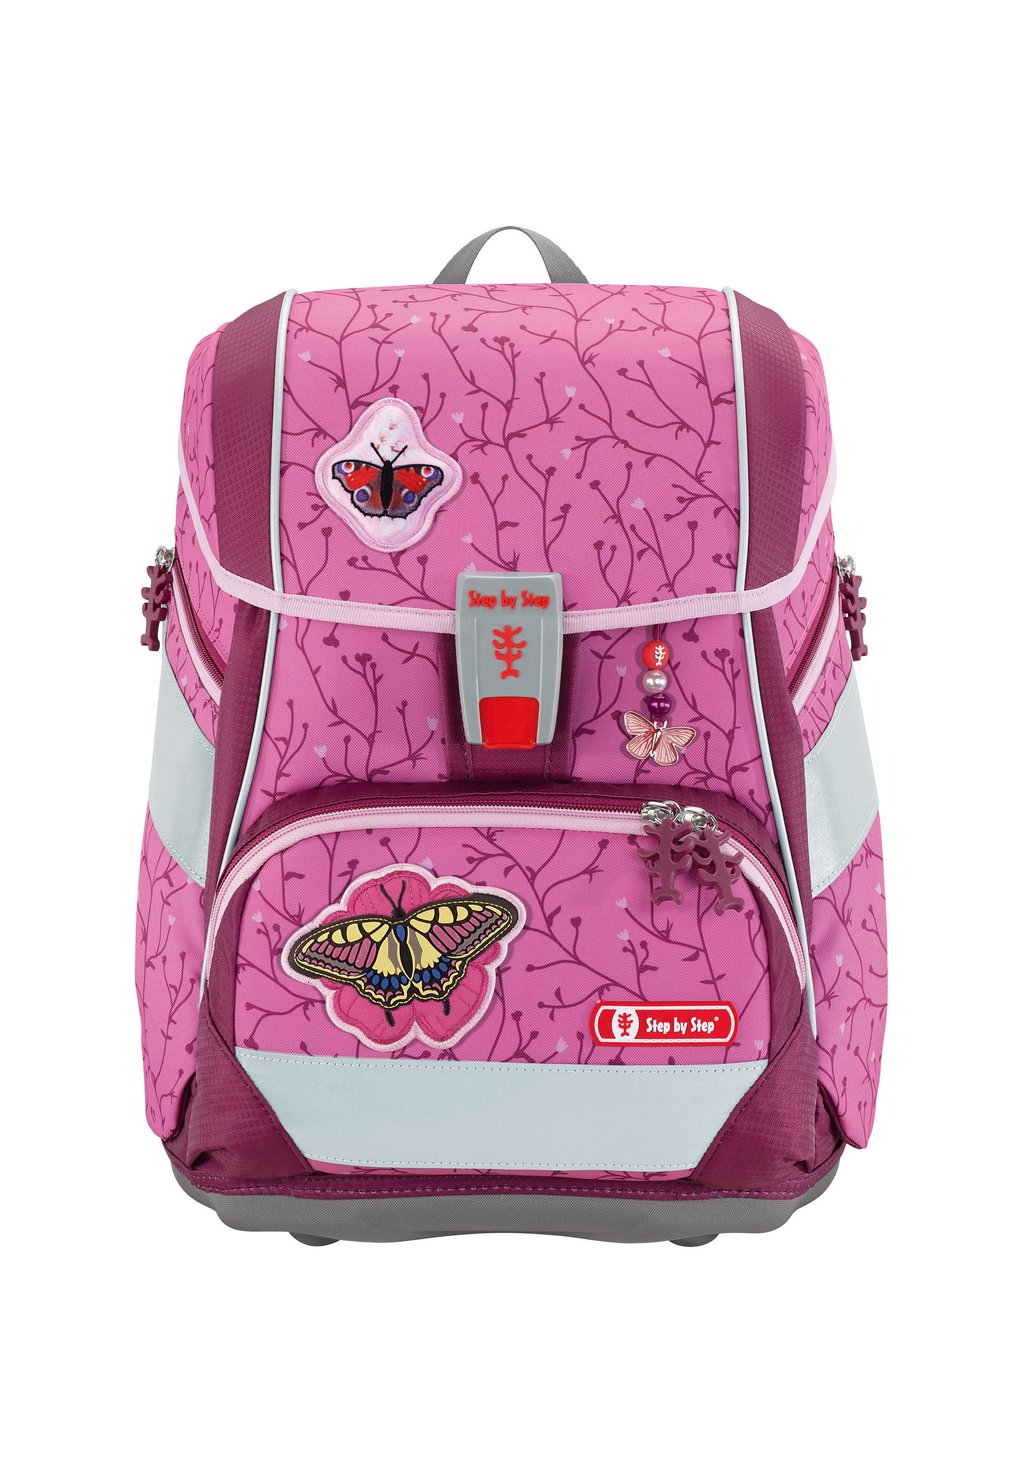 Набор школьных сумок 2IN1 PLUS SET 6TLG Step by Step, цвет natural butterfly набор школьных сумок giant set 5tlg step by step цвет soccer star